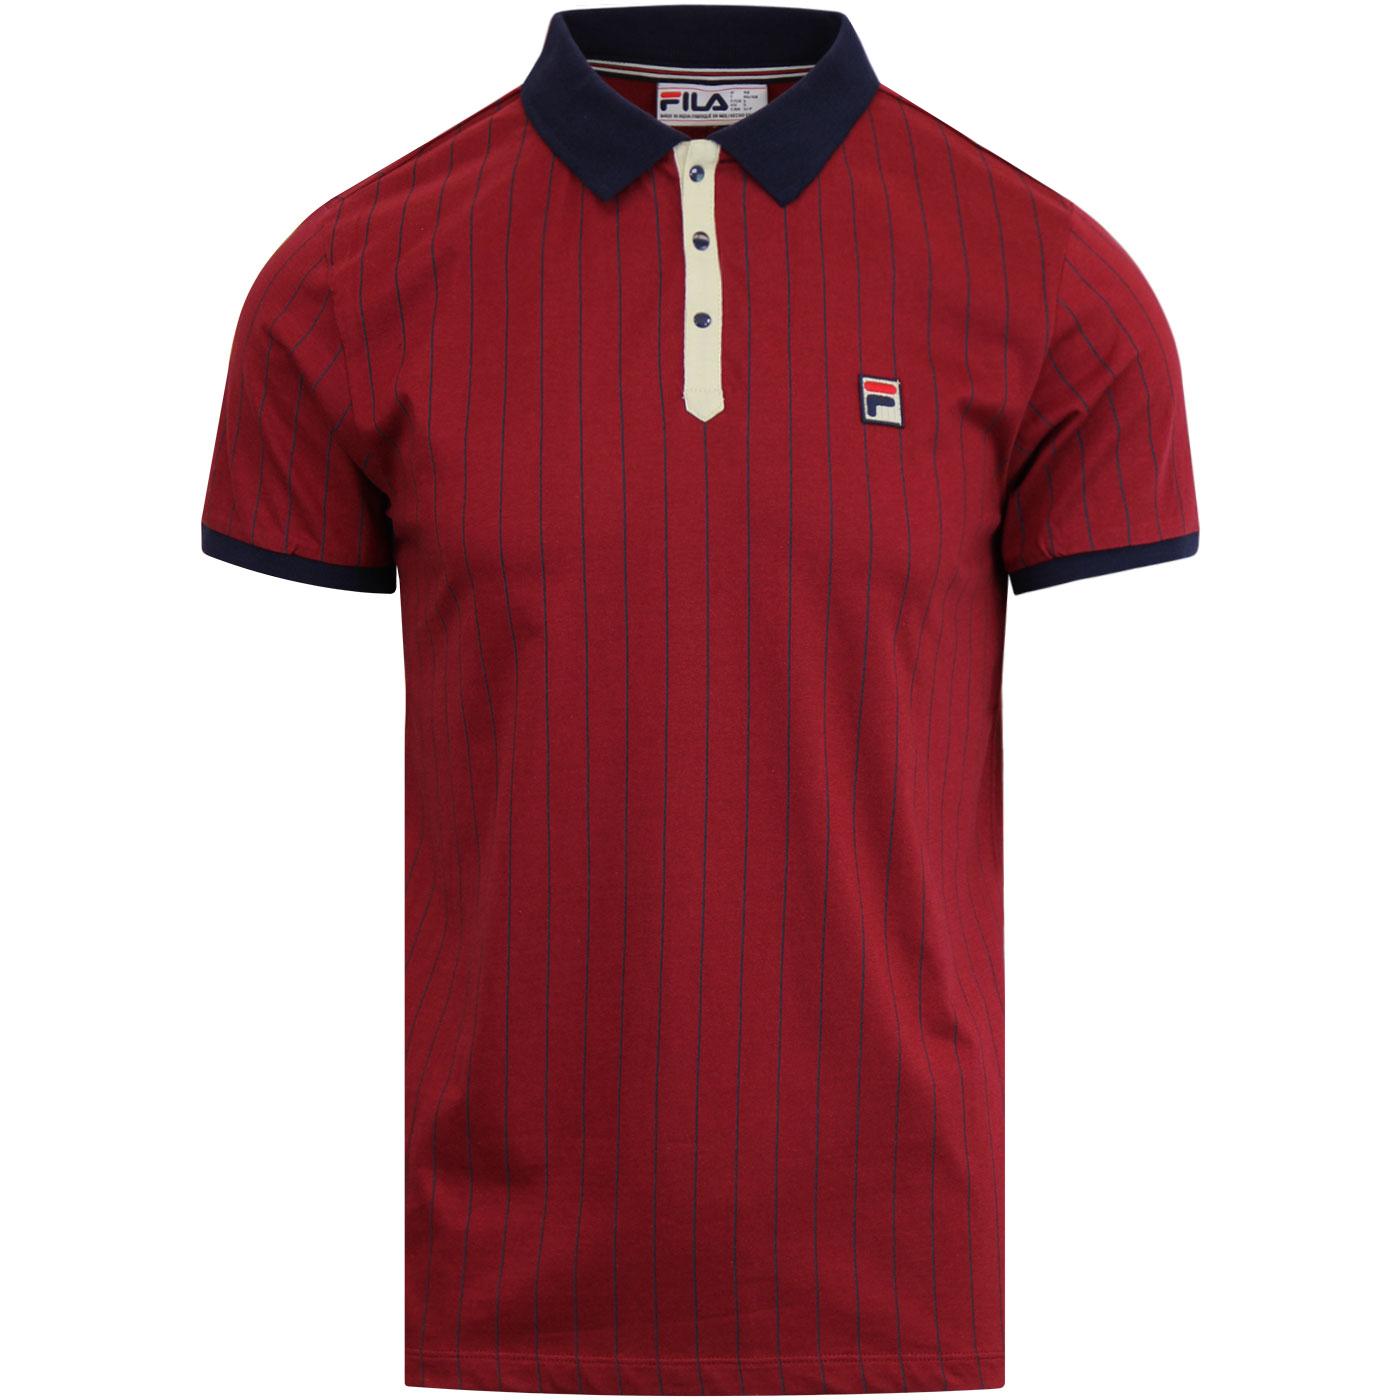 FILA VINTAGE BB1 Retro 70s Borg Tennis Polo Shirt Red